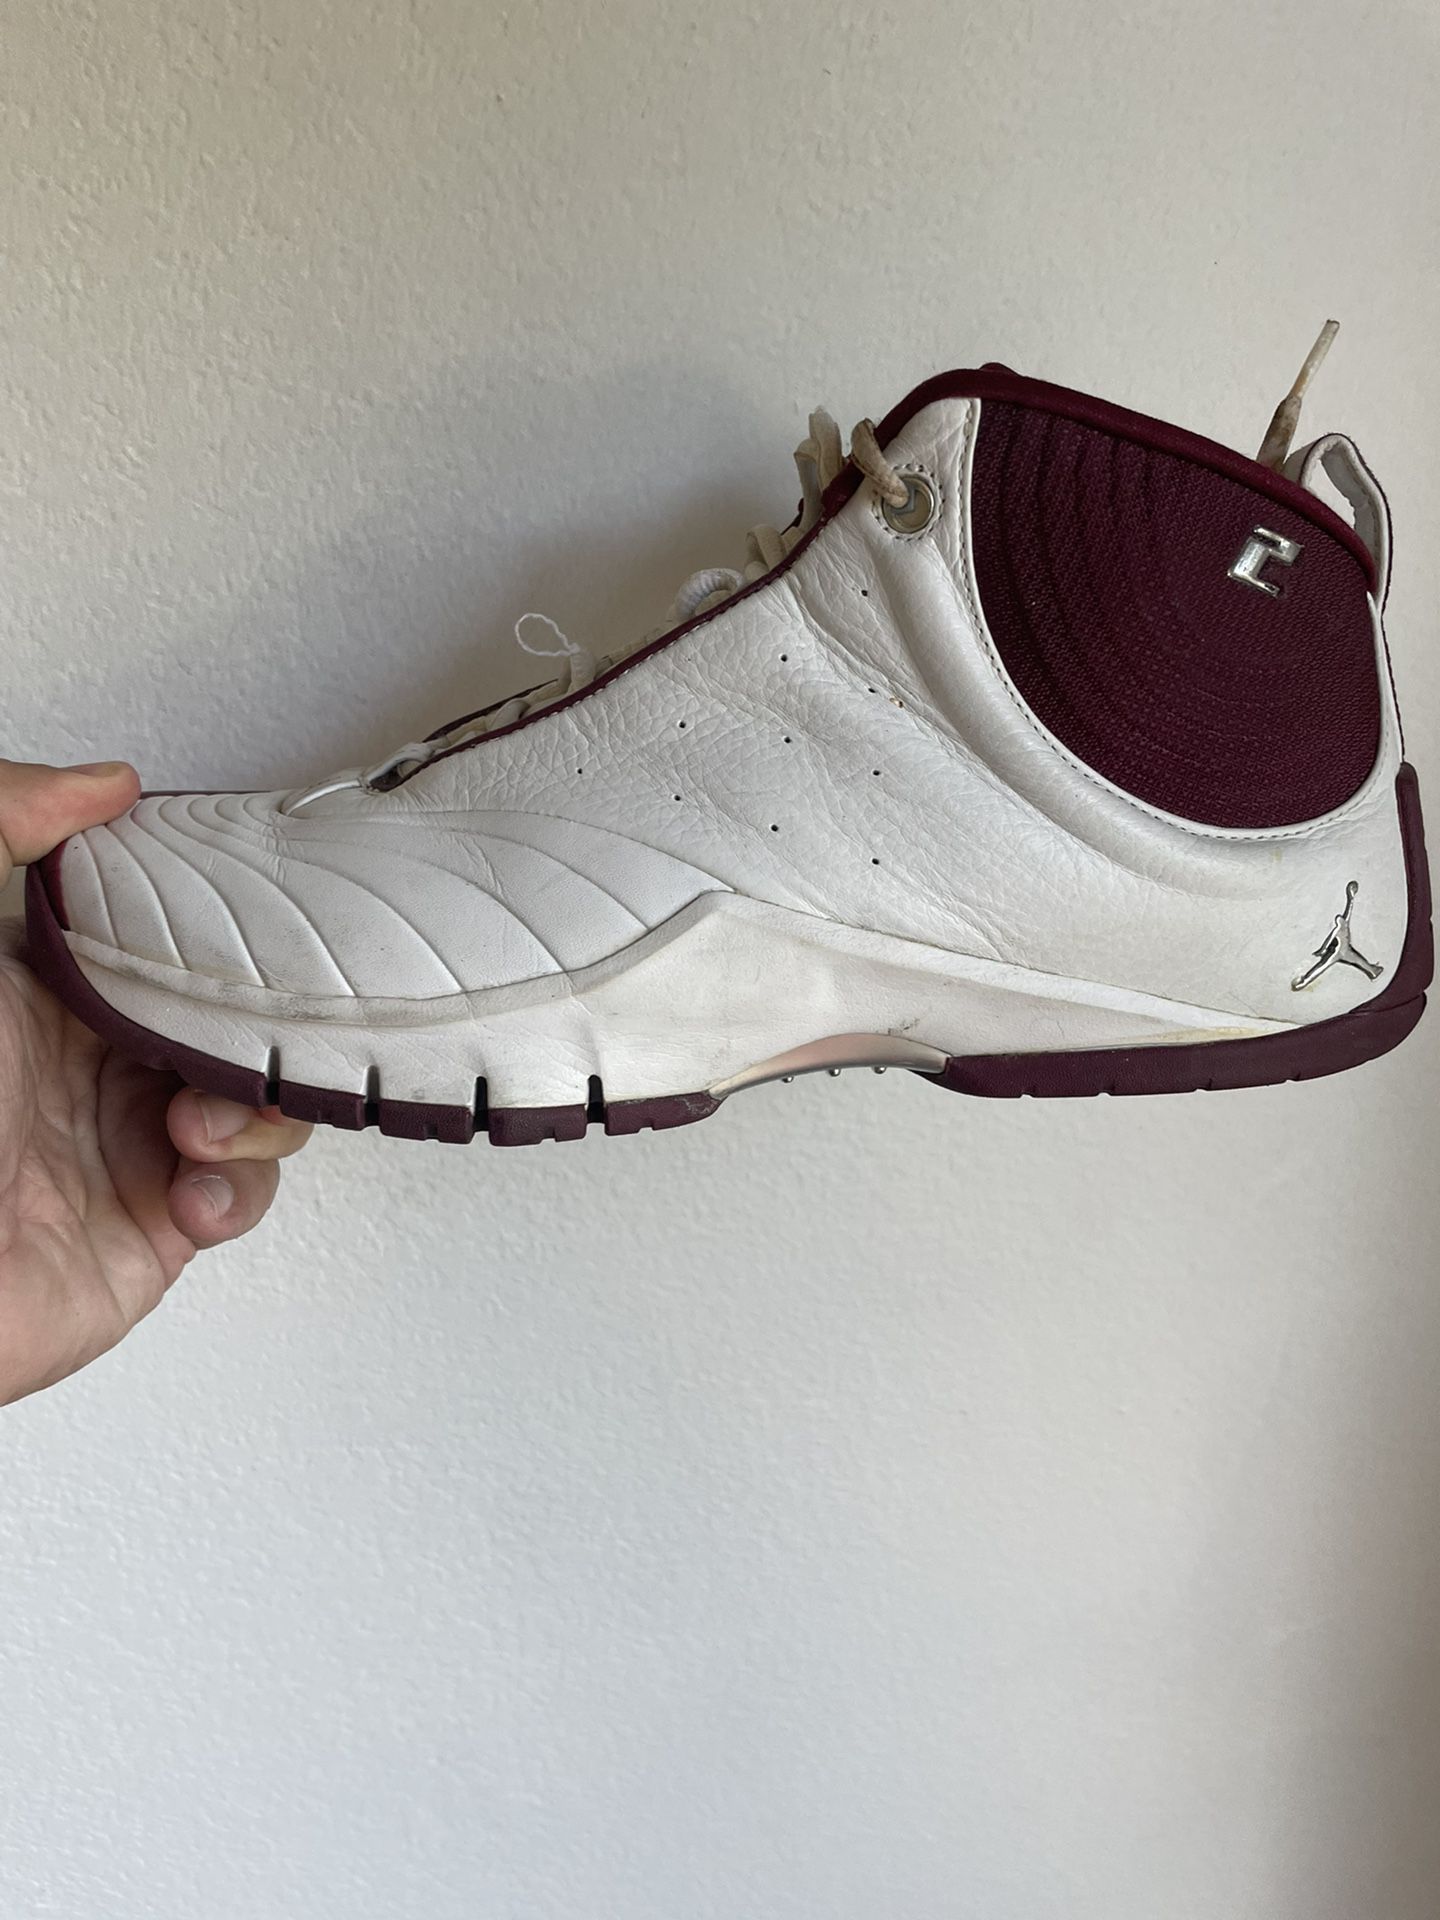 Jordan Jeter Basketball Shoes. Size 10 for Sale in Sebastian, FL